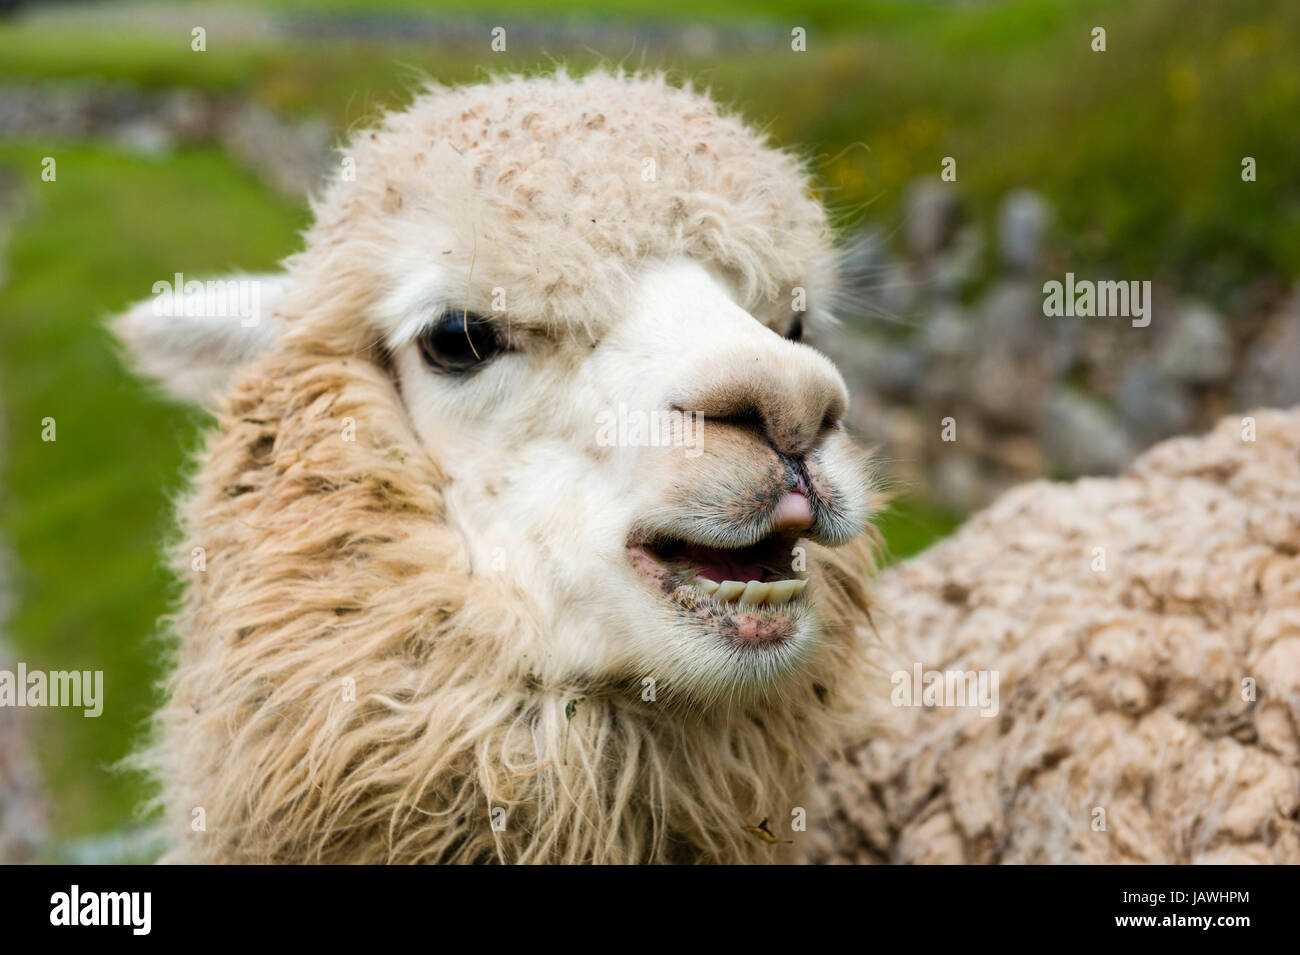 Los dientes, la boca y la nariz de un Lama en las ruinas de la ciudadela Inca. Foto de stock